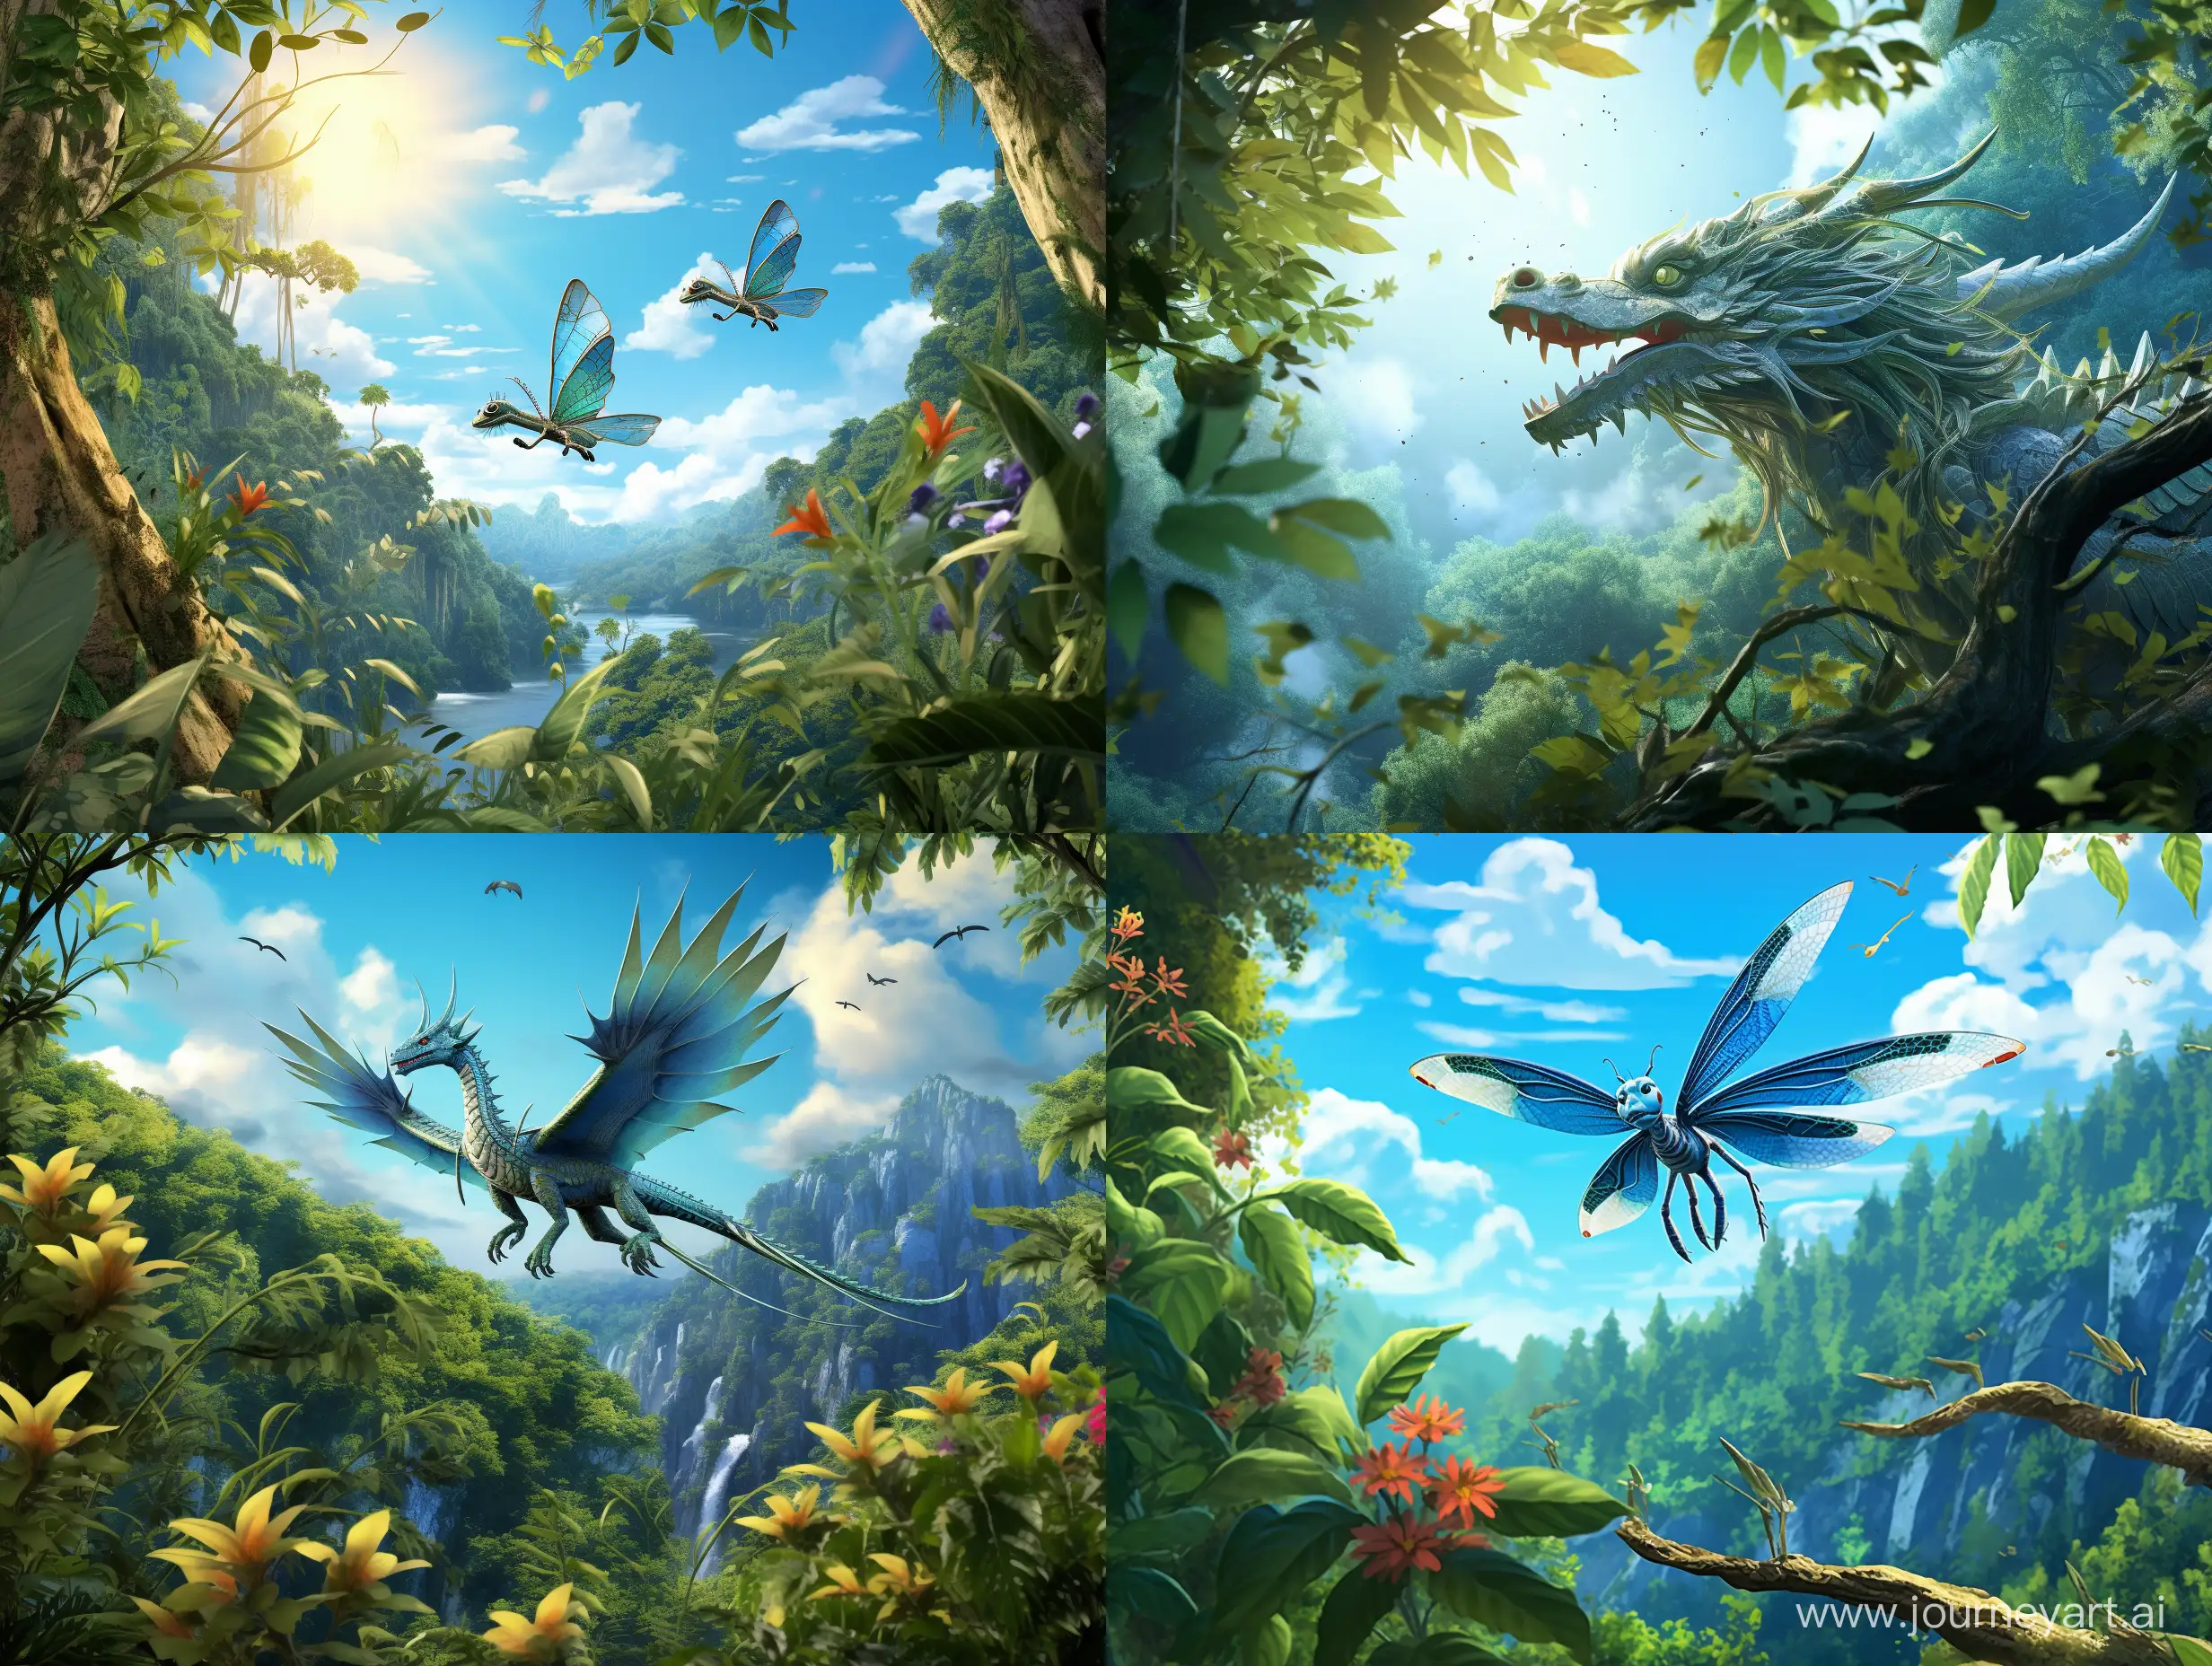 Зеленый китайский дракон летит над лесом, синее небо, солнце, сказочно,  прекрасно, цифровая живопись, реалистично, ярко, детальная прорисовка